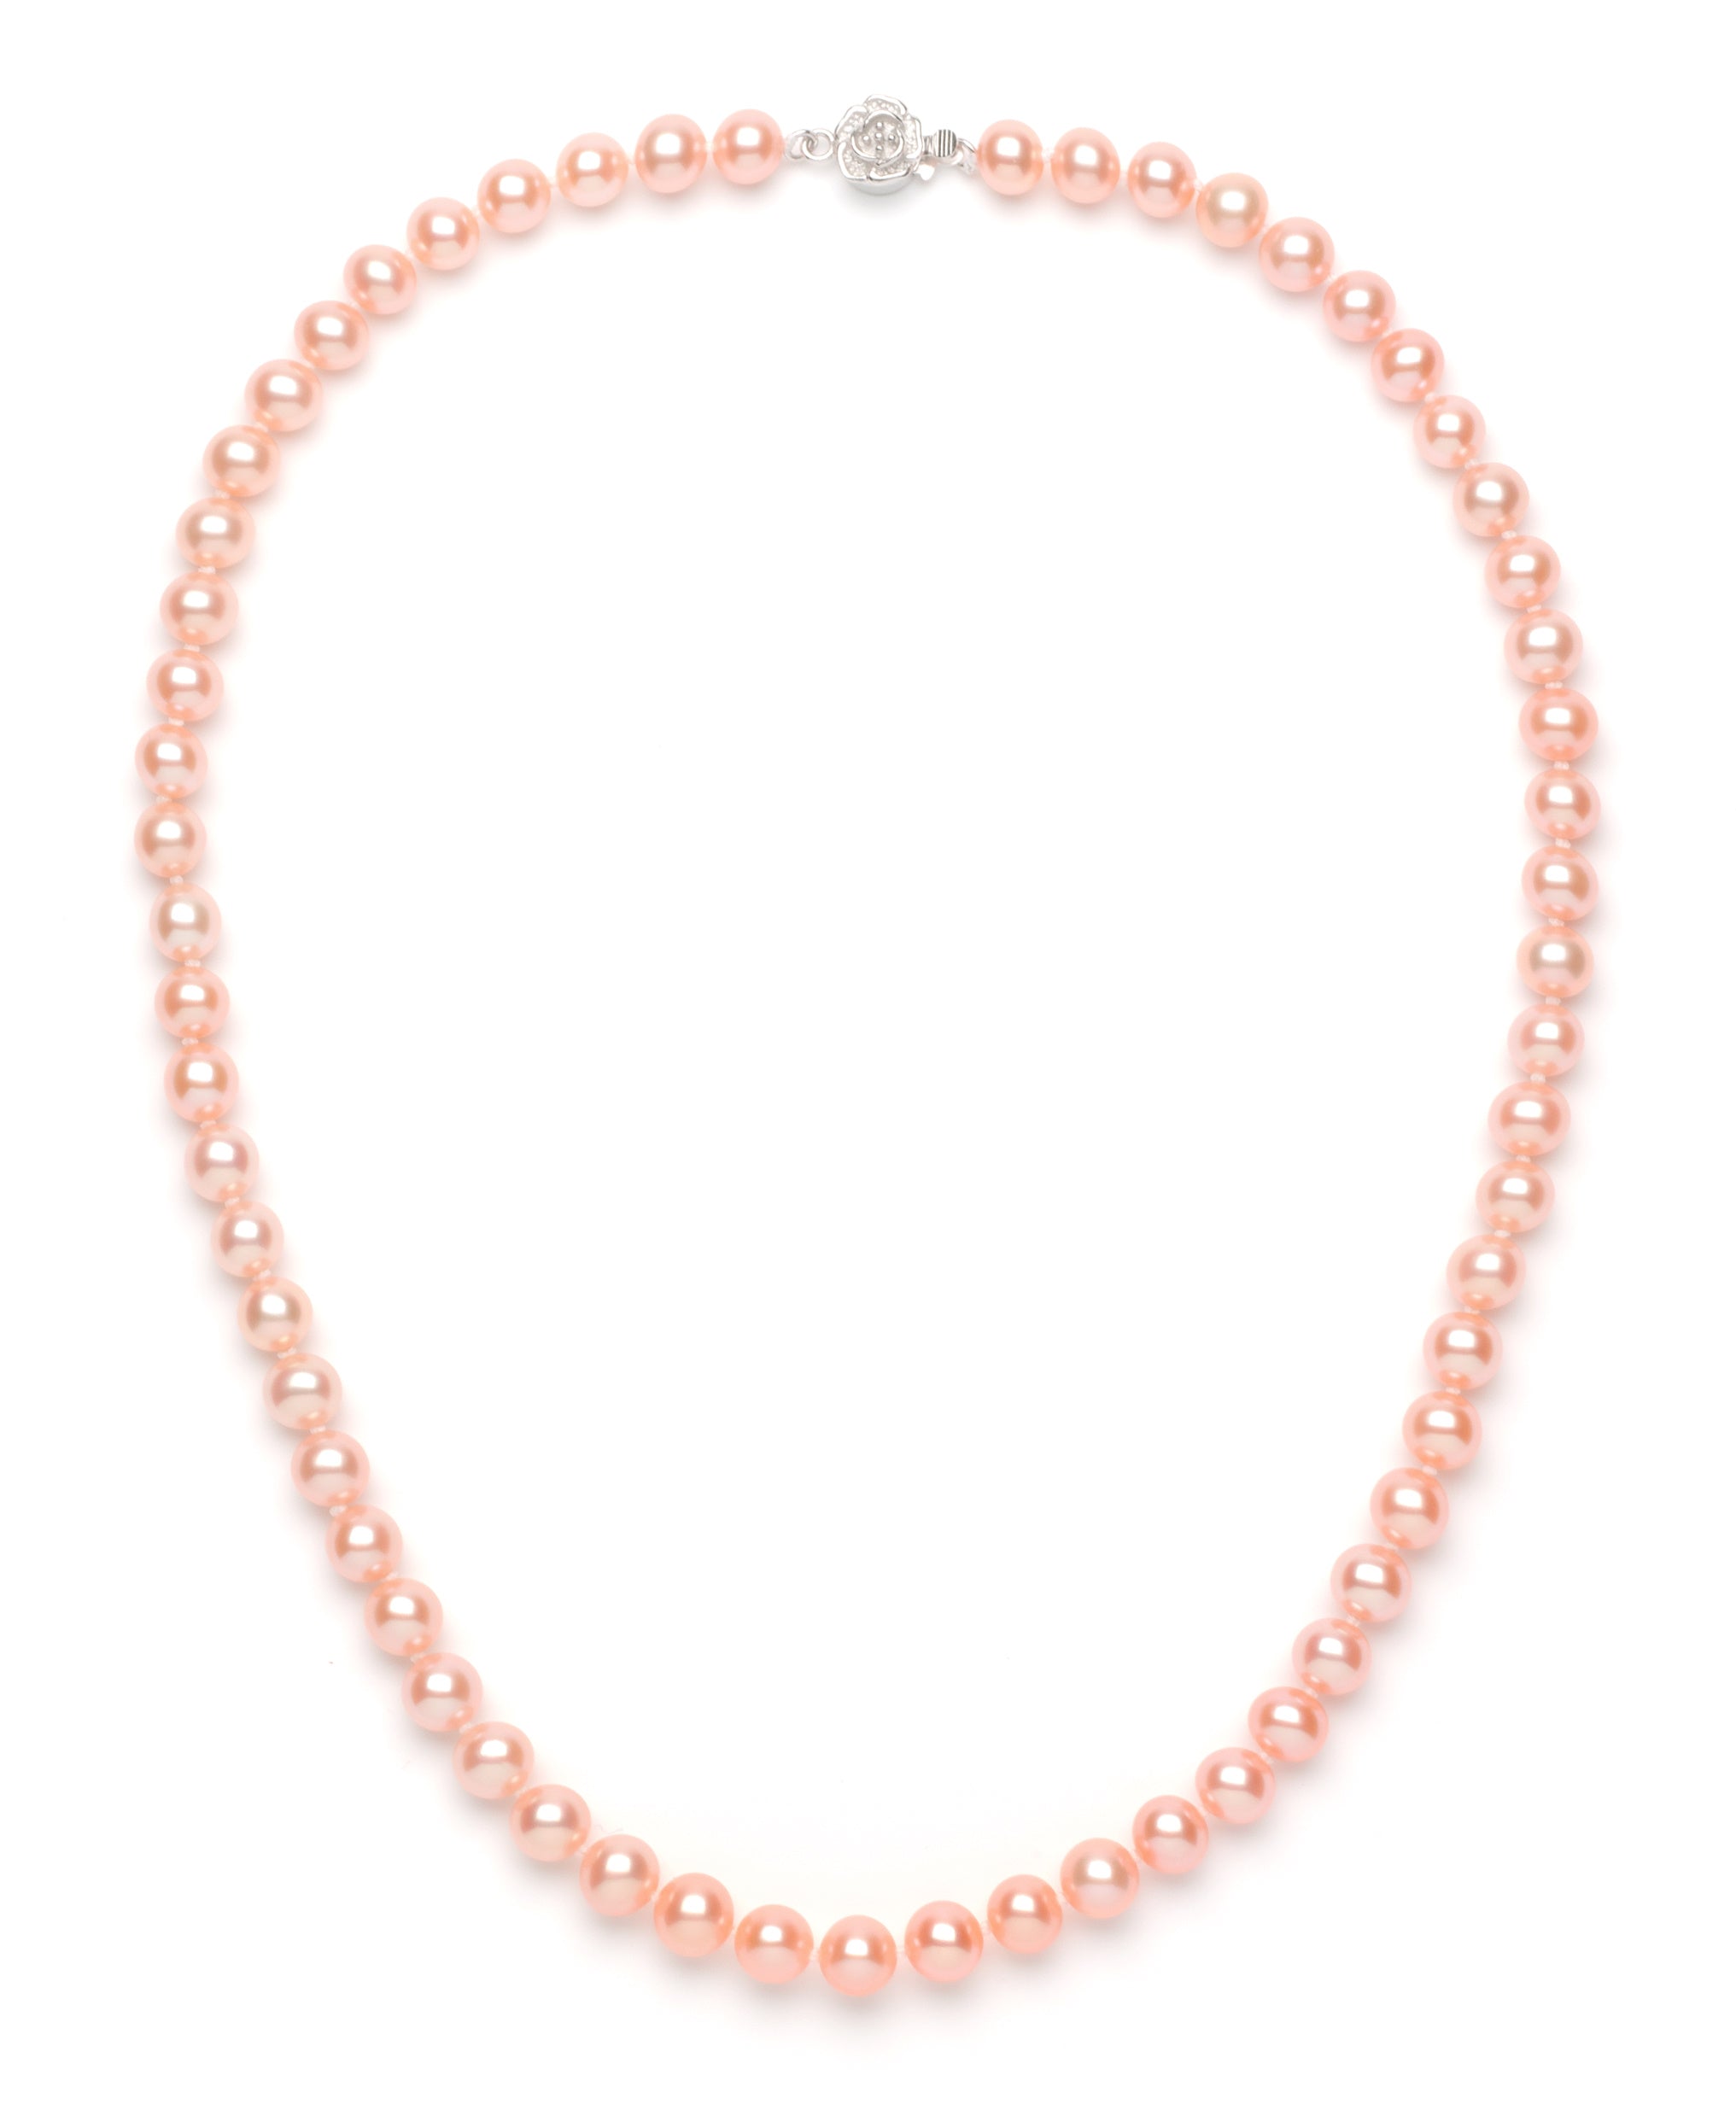 Necklace/Bracelet Set 7.0-8.0 mm Pink Freshwater Pearls